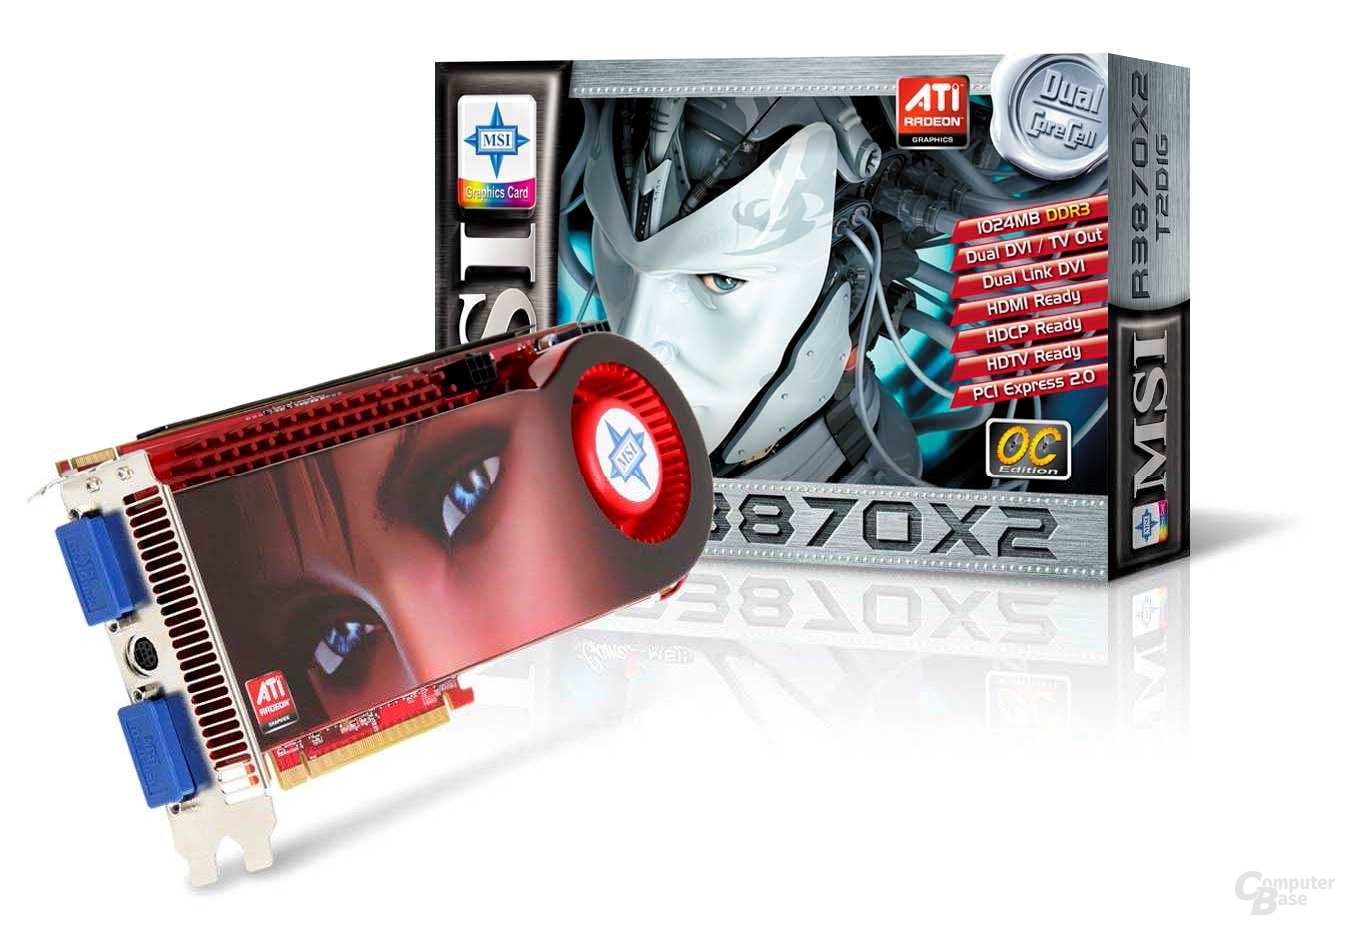 MSI Radeon HD 3870 X2